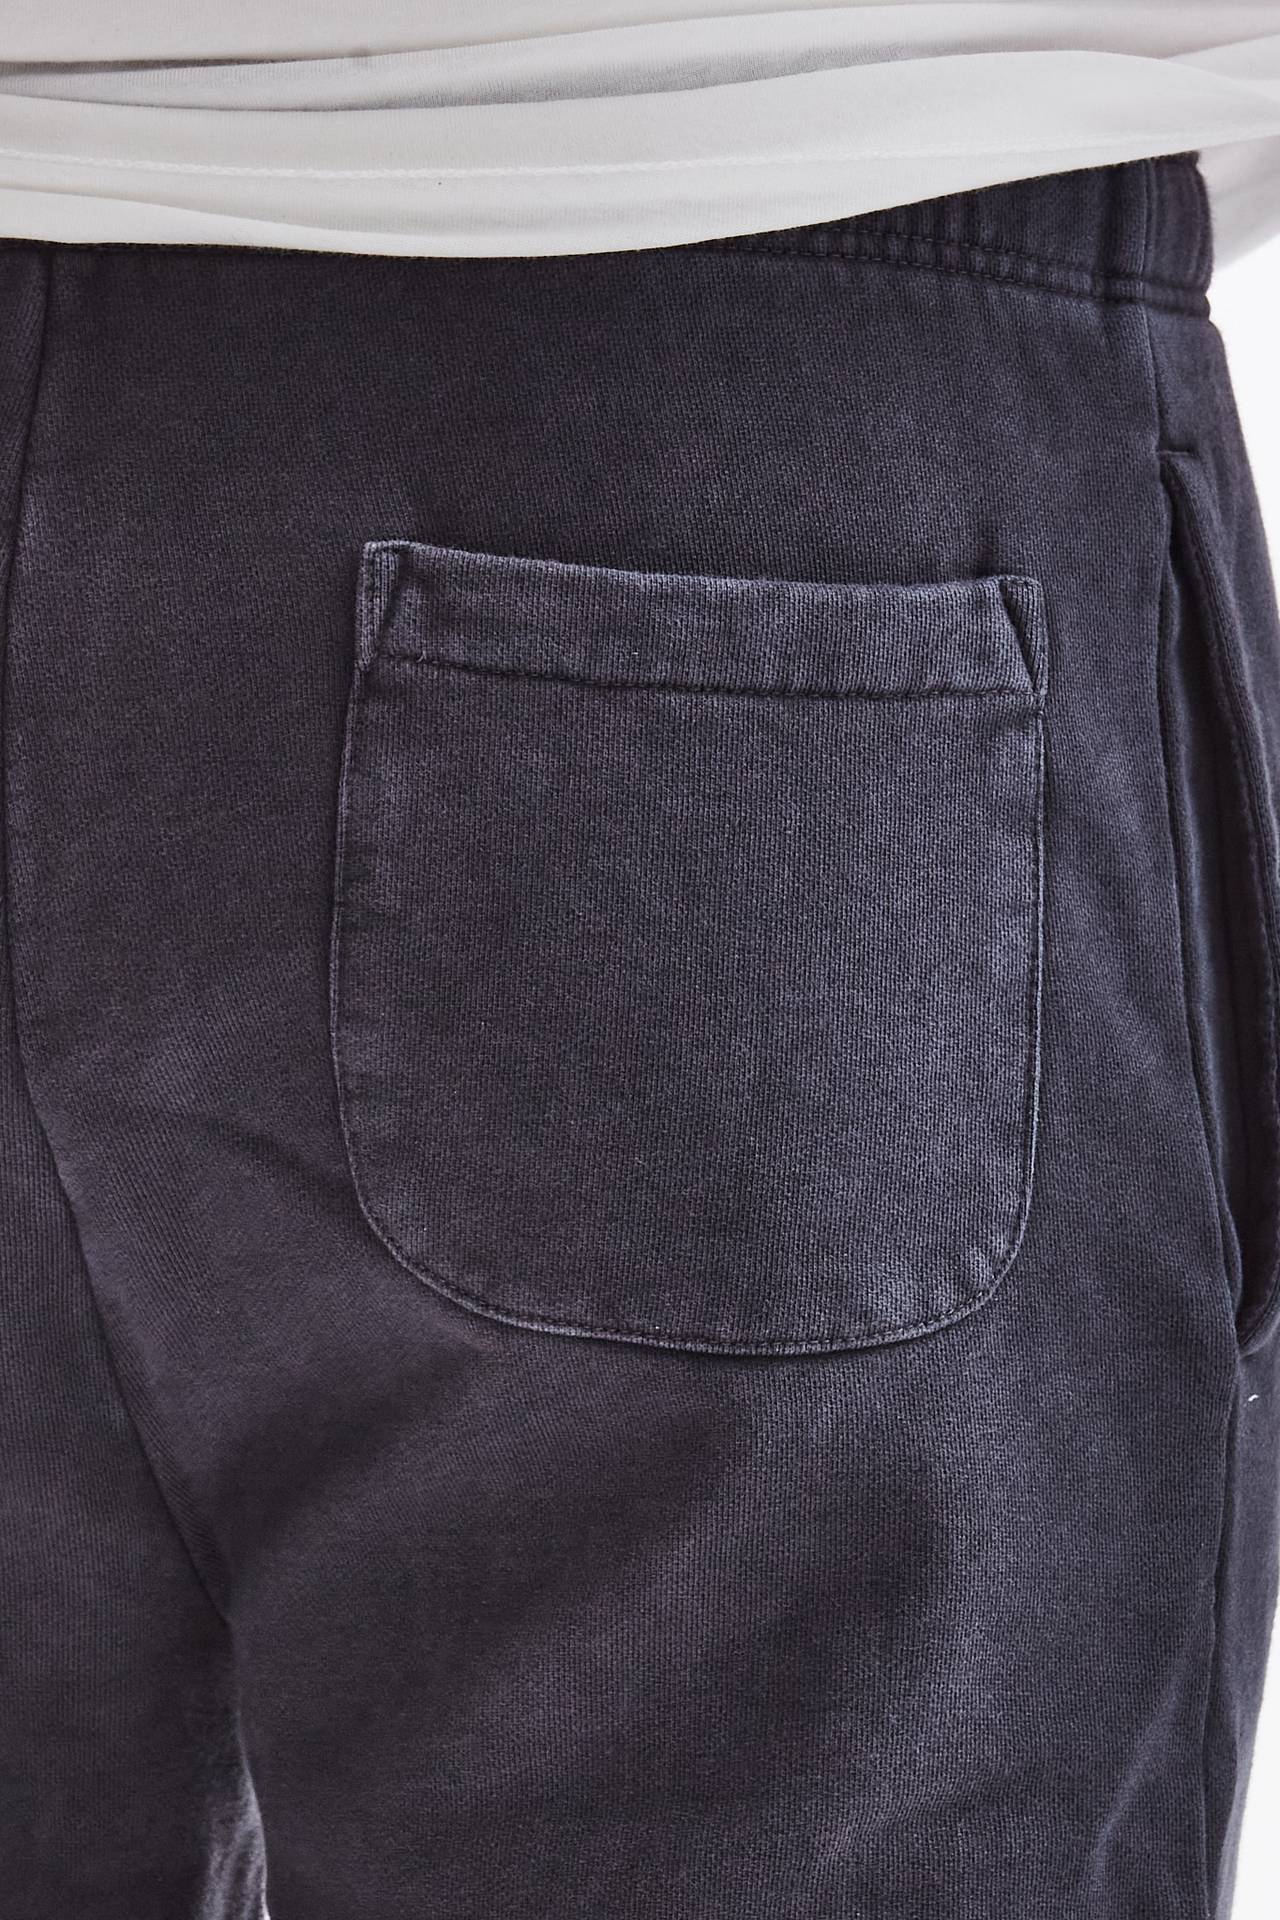 Pantalone tuta in cotone lavato nero